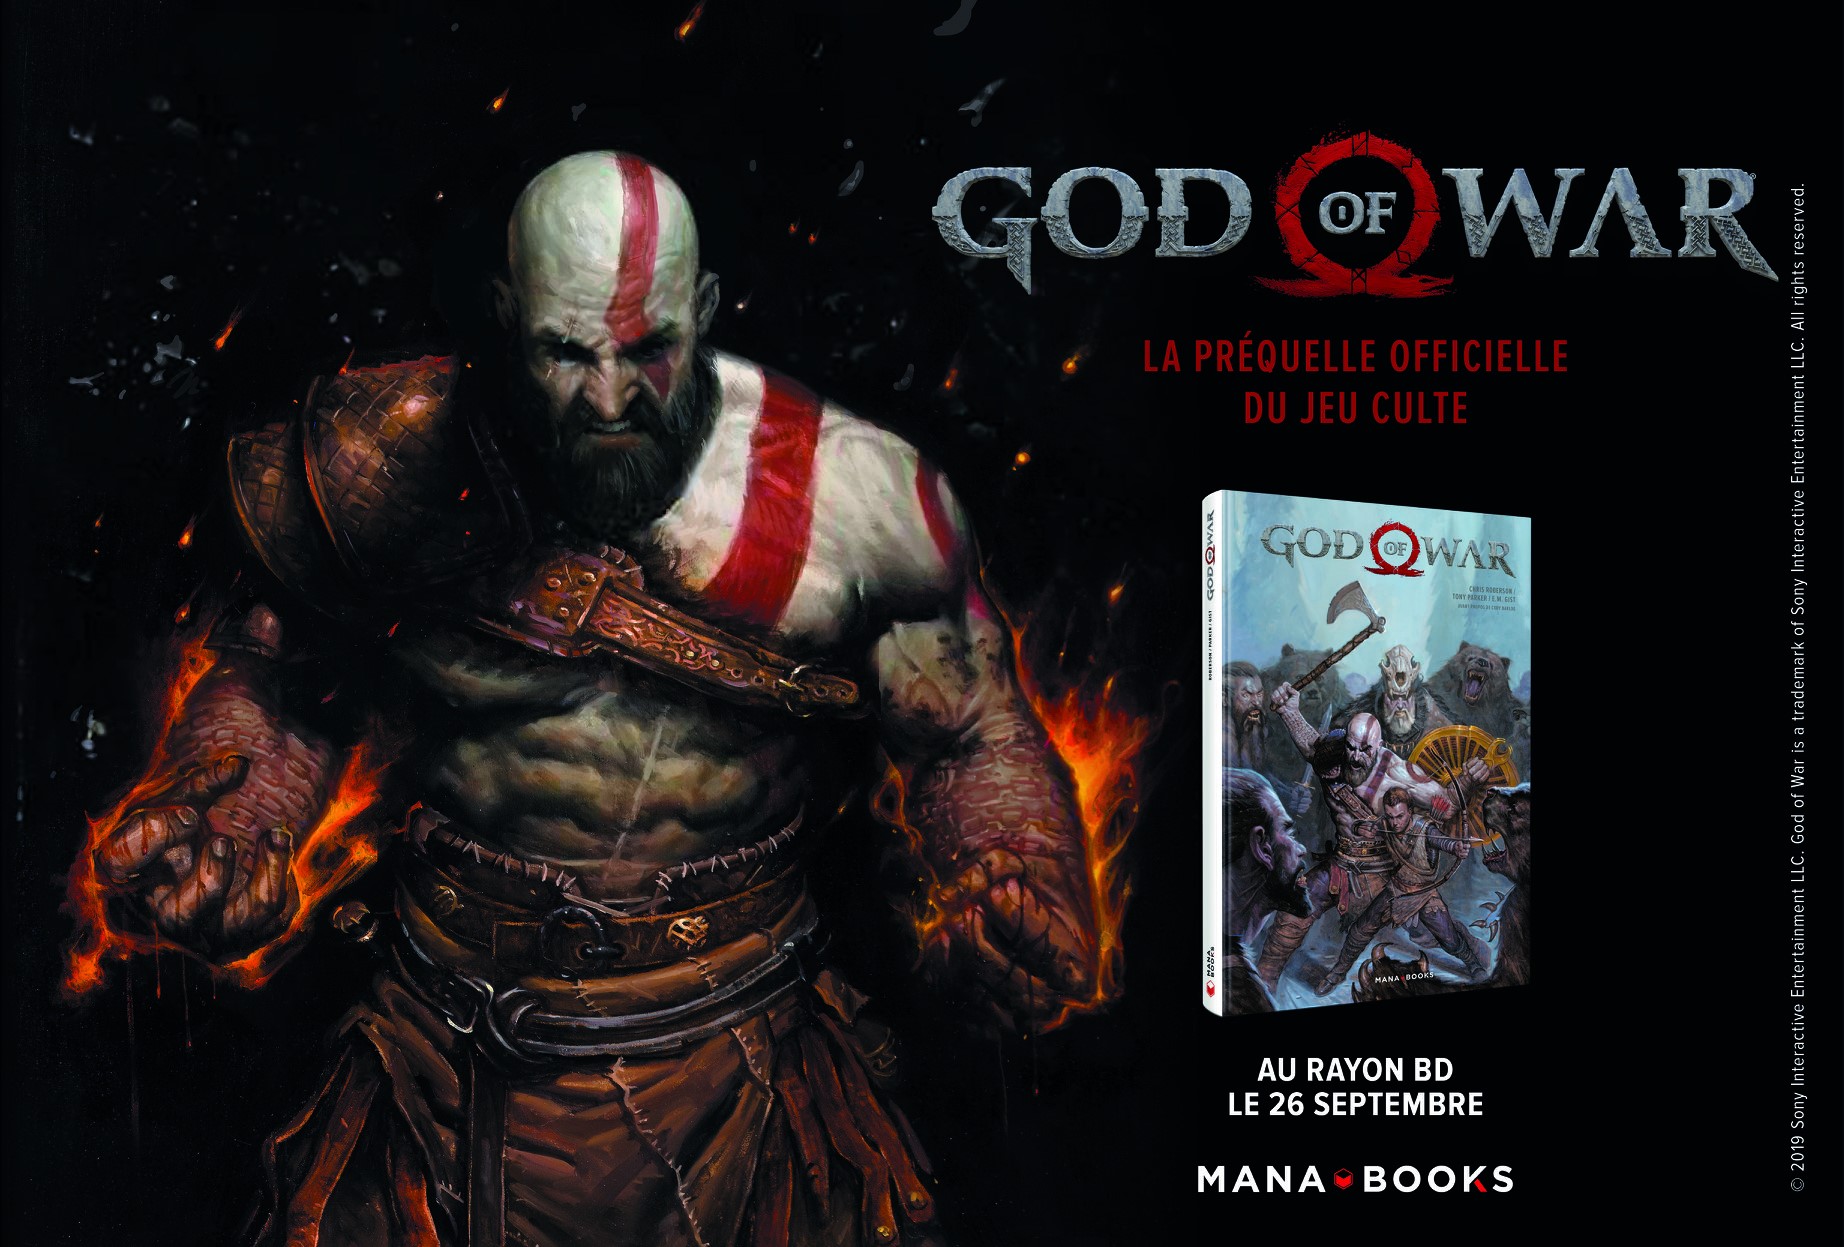 Le comics God of War arrive en VF chez Mana Books